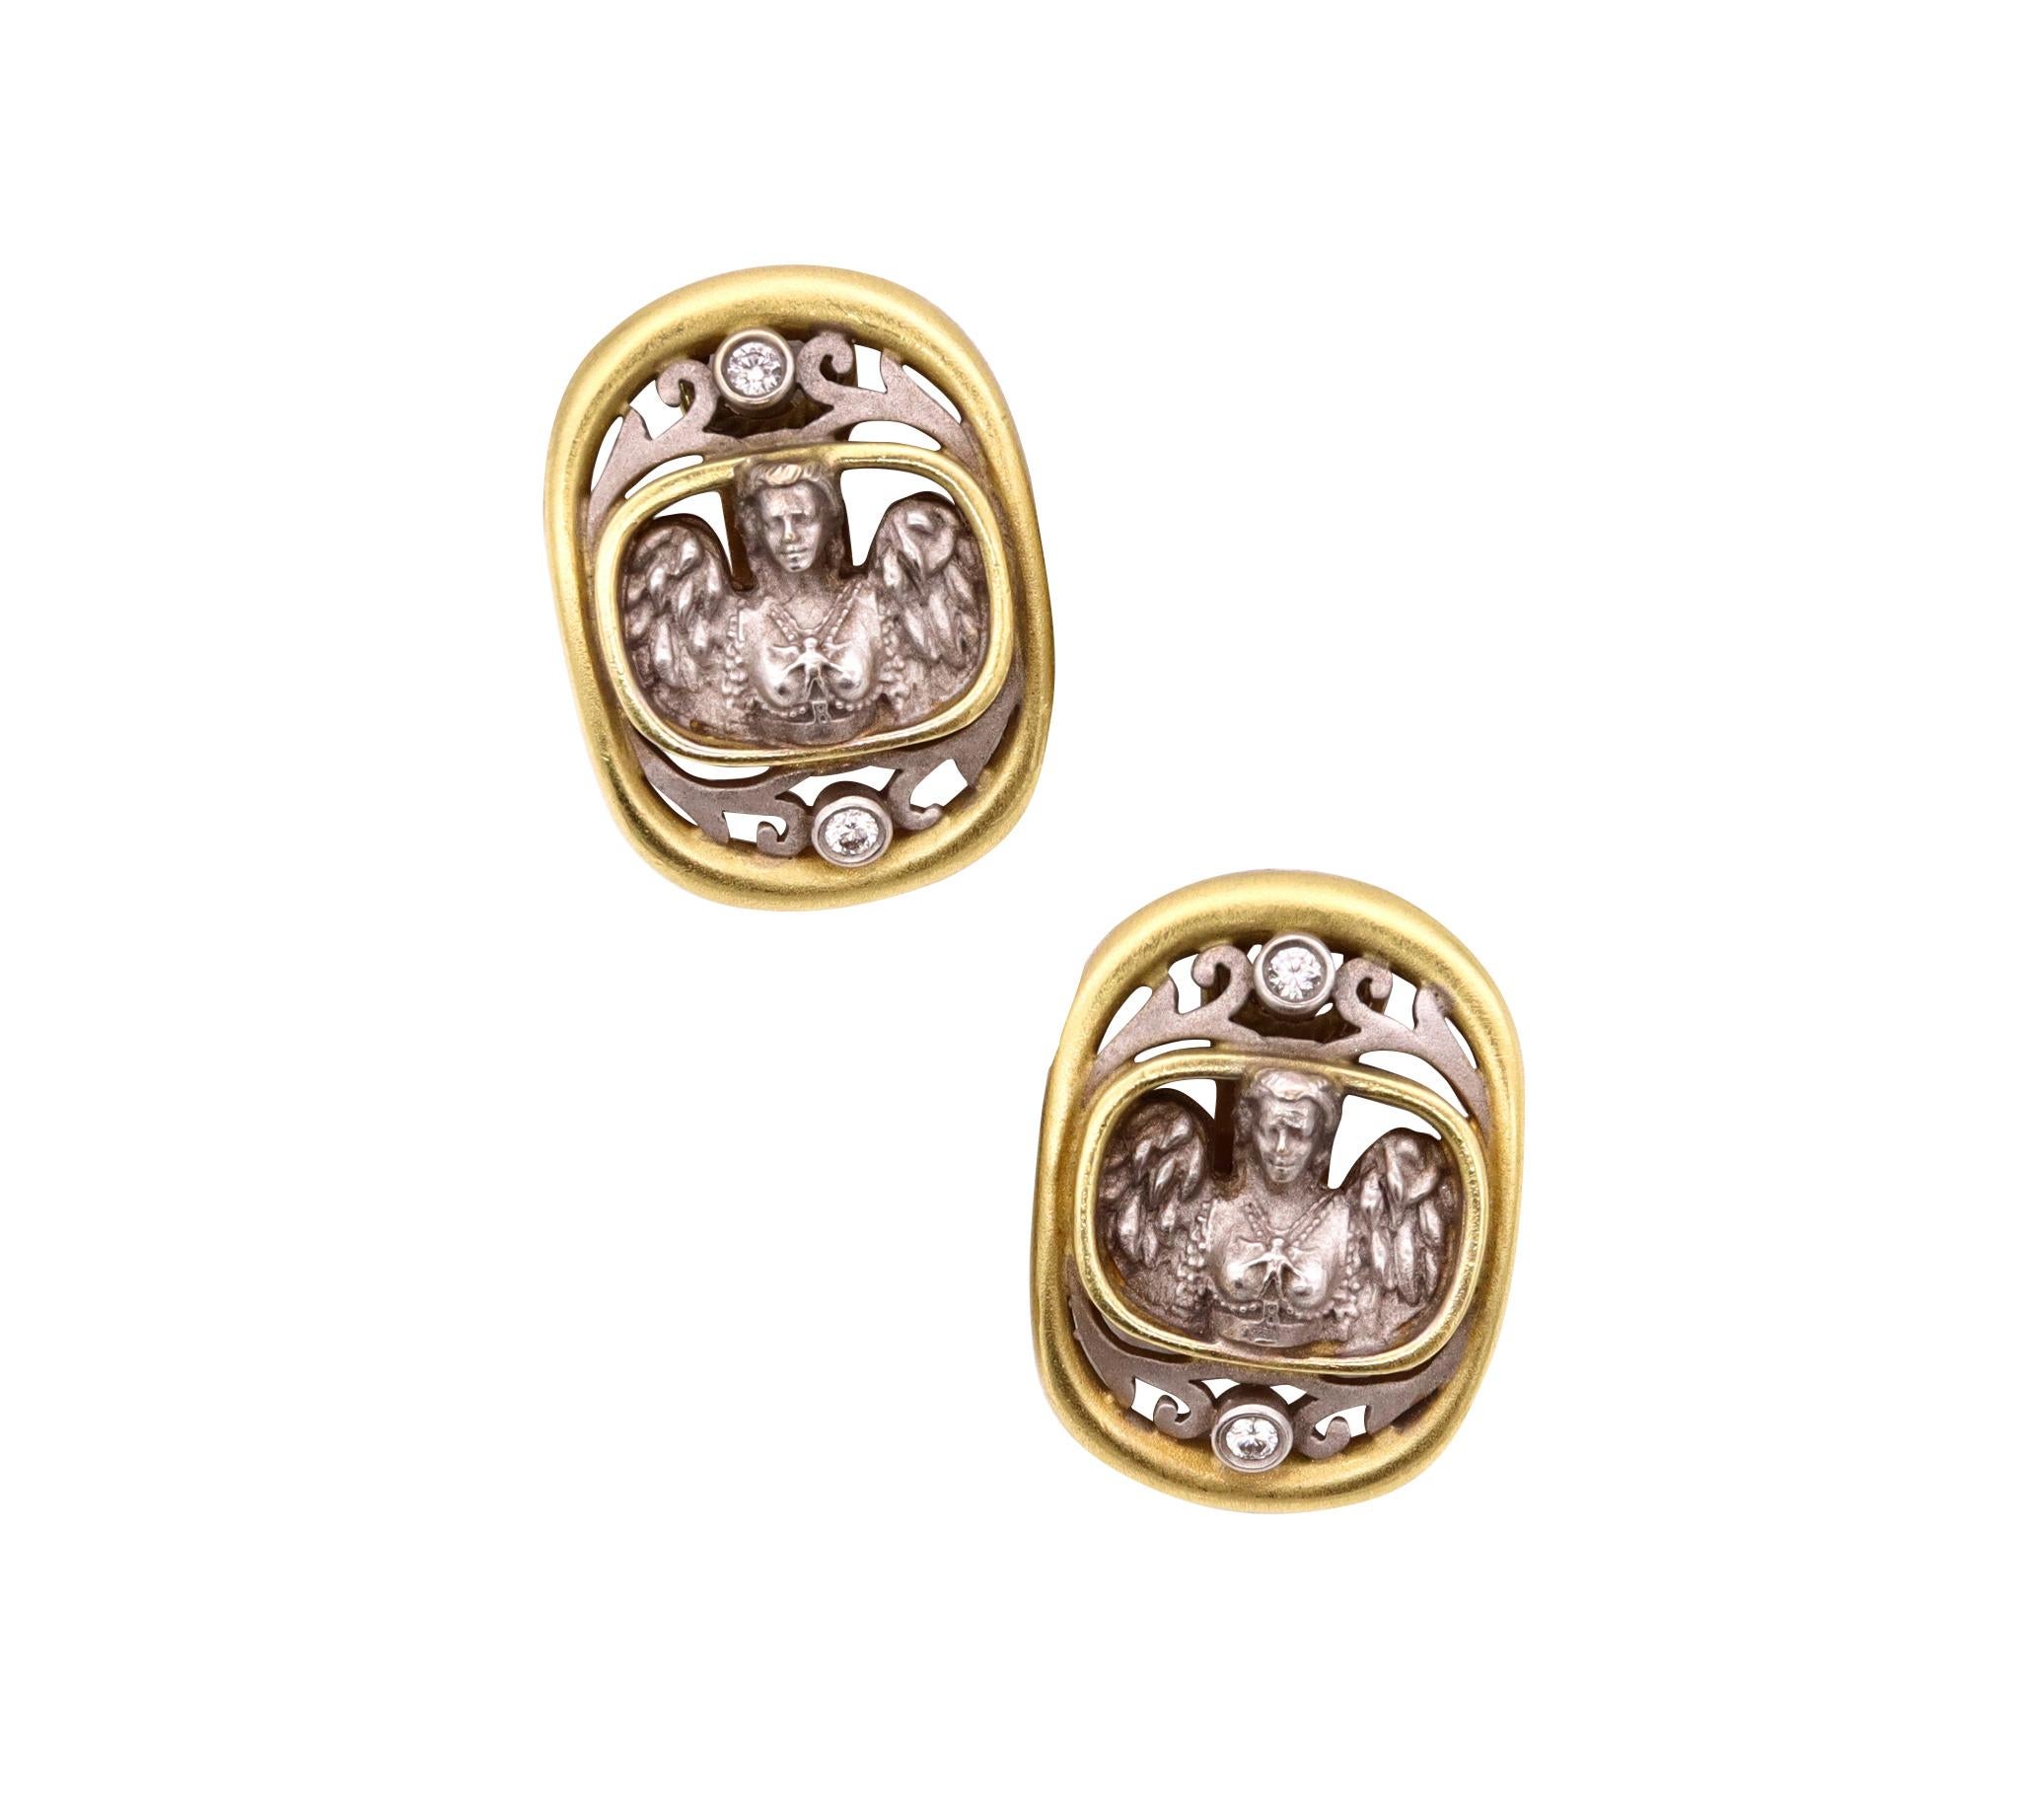 Ein Paar Clips-Ohrenringe, entworfen von Barry Kieselstein-Cord. 

Schönes klassisches etruskisches Paar aus New York City aus dem Jahr 2001. Sie sind in zwei Farbtönen aus massivem 18-karätigem Gelb- und Weißgold gefertigt und mit einer gebürsteten